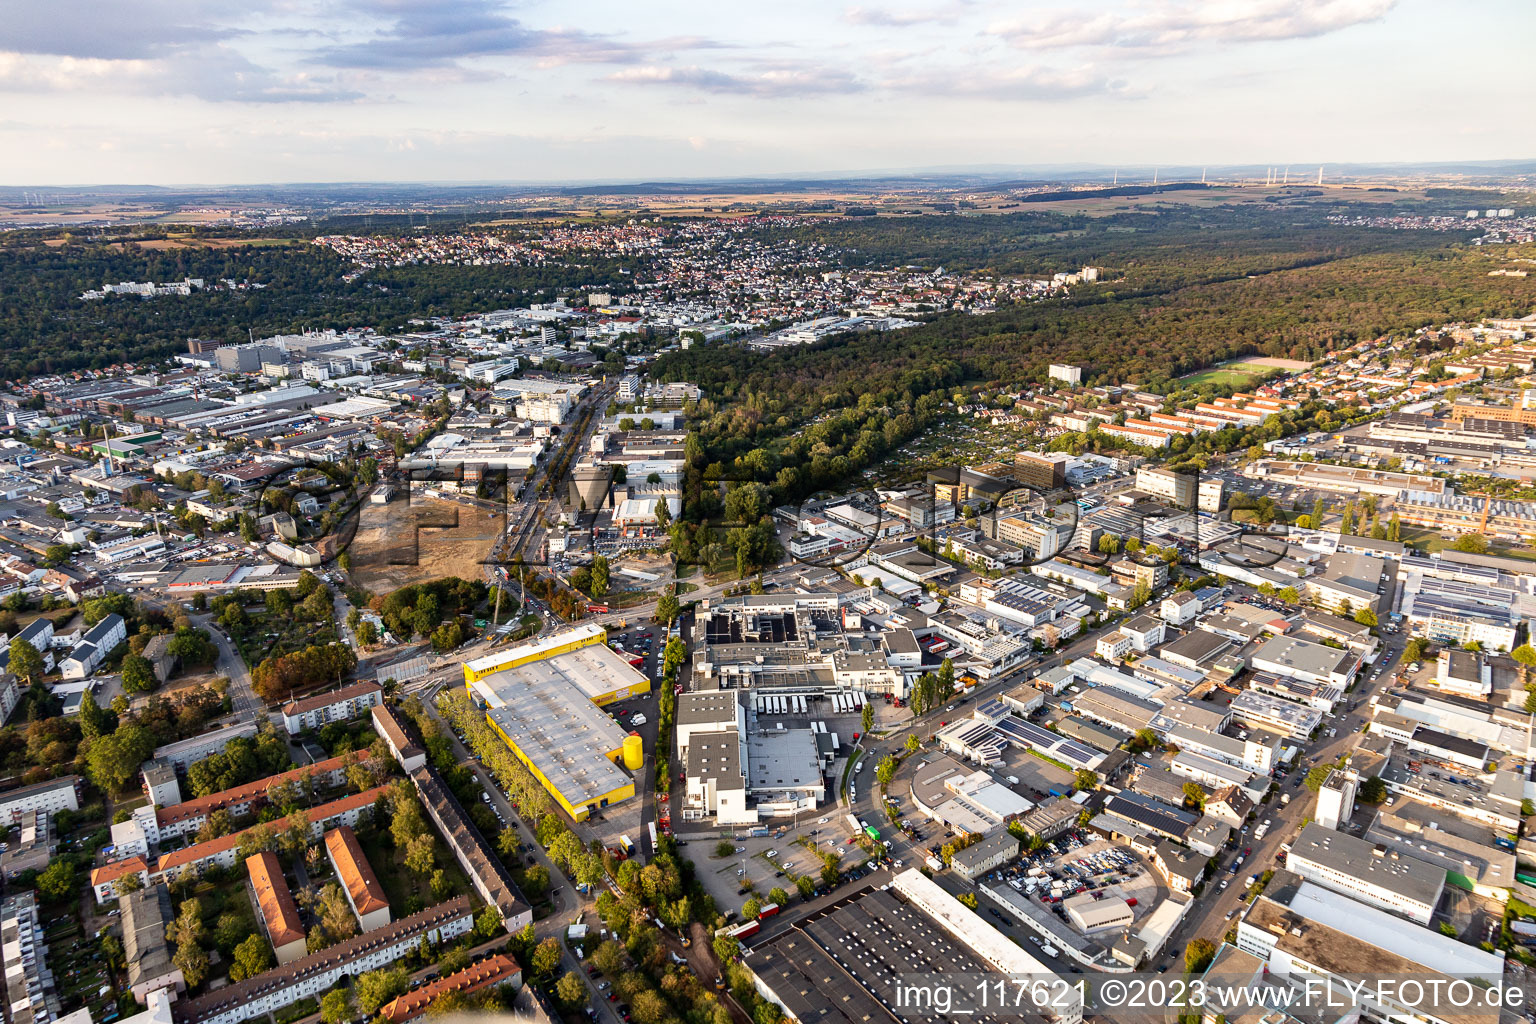 Luftbild von Ortsteil Riederwald in Frankfurt am Main im Bundesland Hessen, Deutschland